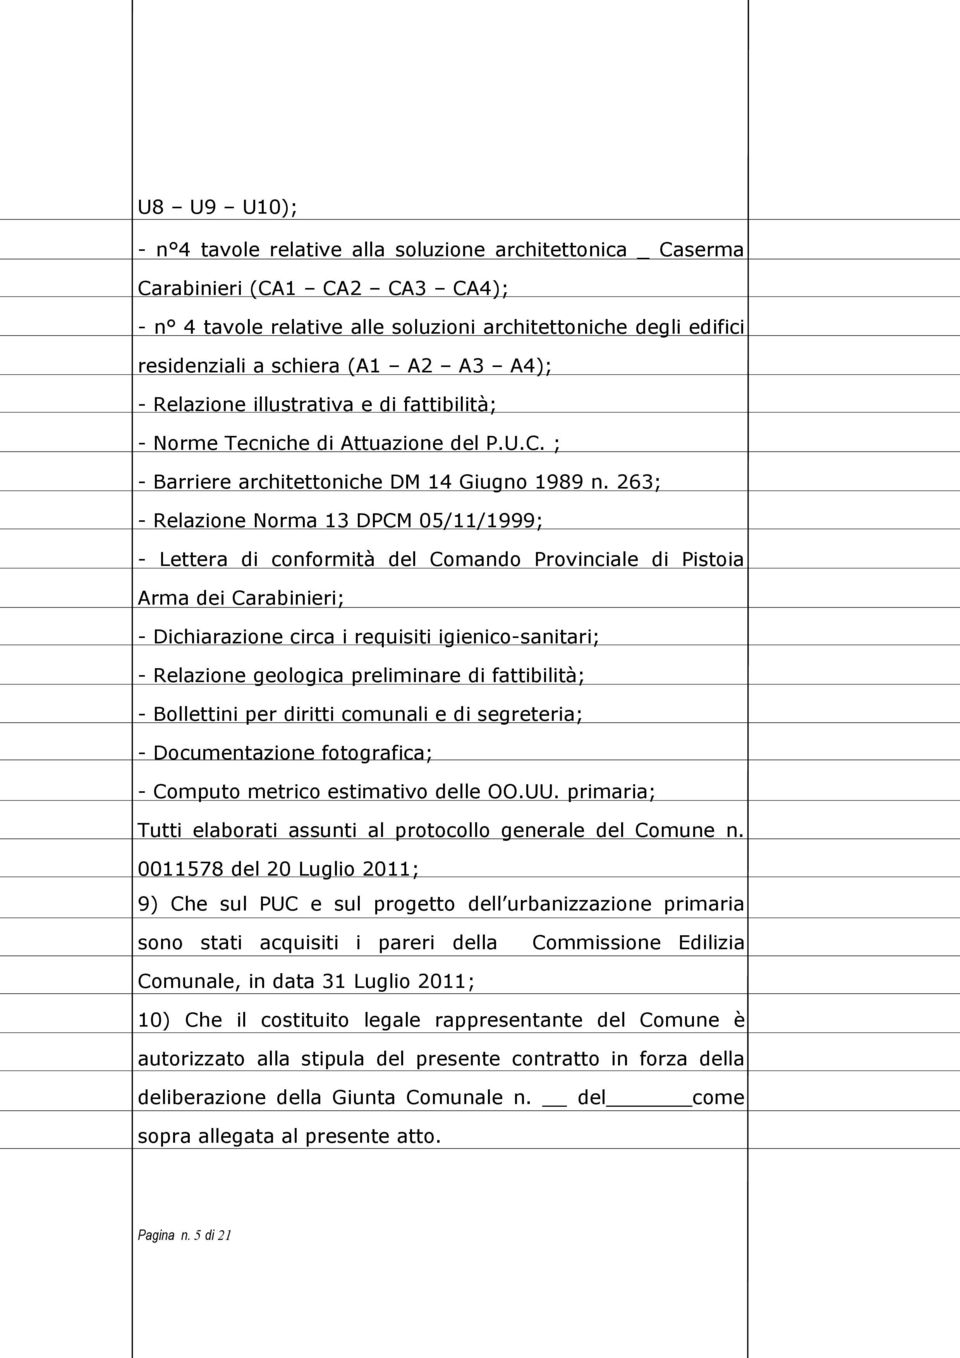 263; - Relazione Norma 13 DPCM 05/11/1999; - Lettera di conformità del Comando Provinciale di Pistoia Arma dei Carabinieri; - Dichiarazione circa i requisiti igienico-sanitari; - Relazione geologica